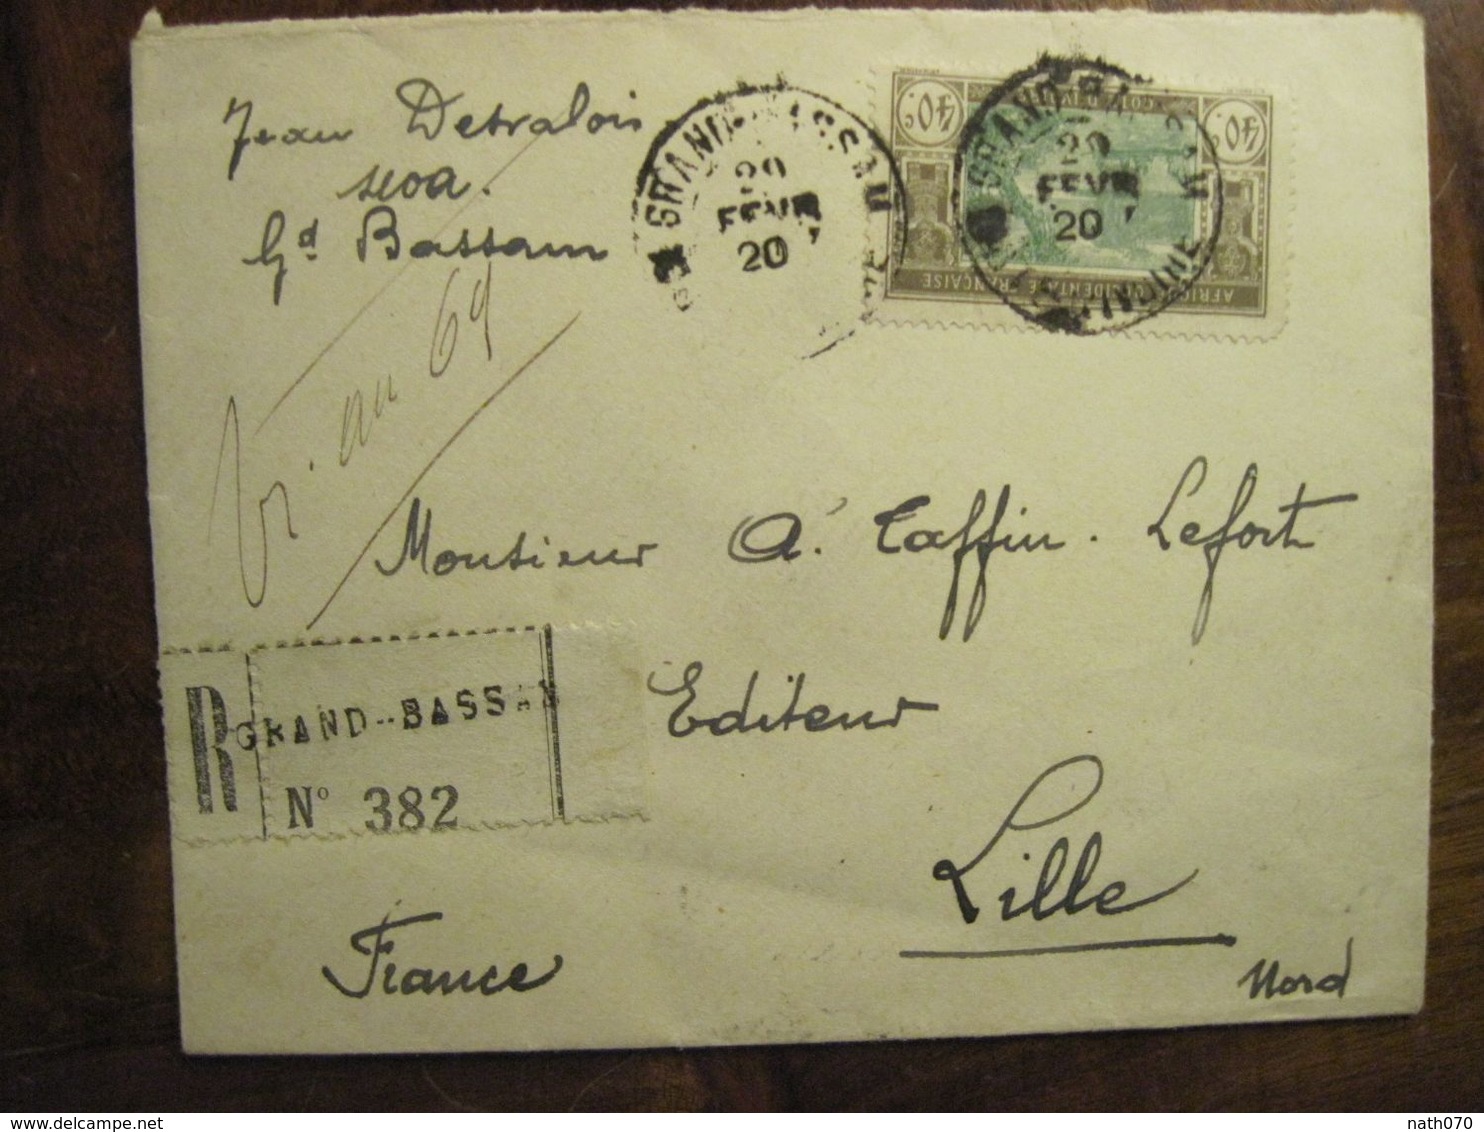 Cote D'Ivoire 1920 France Grand Bassam Lettre Enveloppe Cover Colonie Recommandé Reco AOF Taffin Lefort - Brieven En Documenten